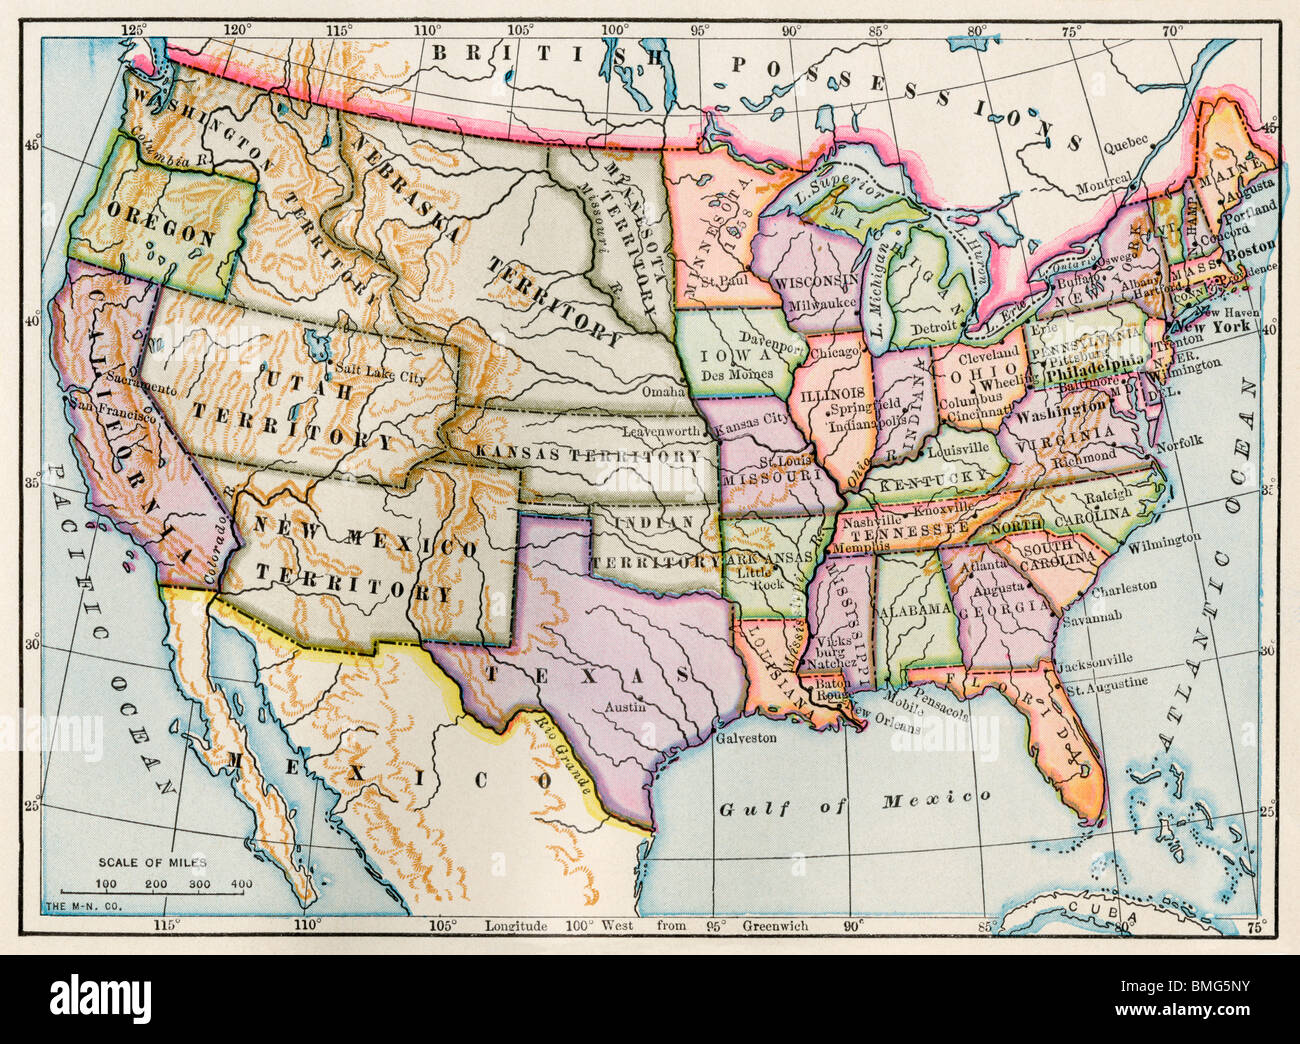 États-unis et territoires au début de la guerre civile. Lithographie couleur Banque D'Images